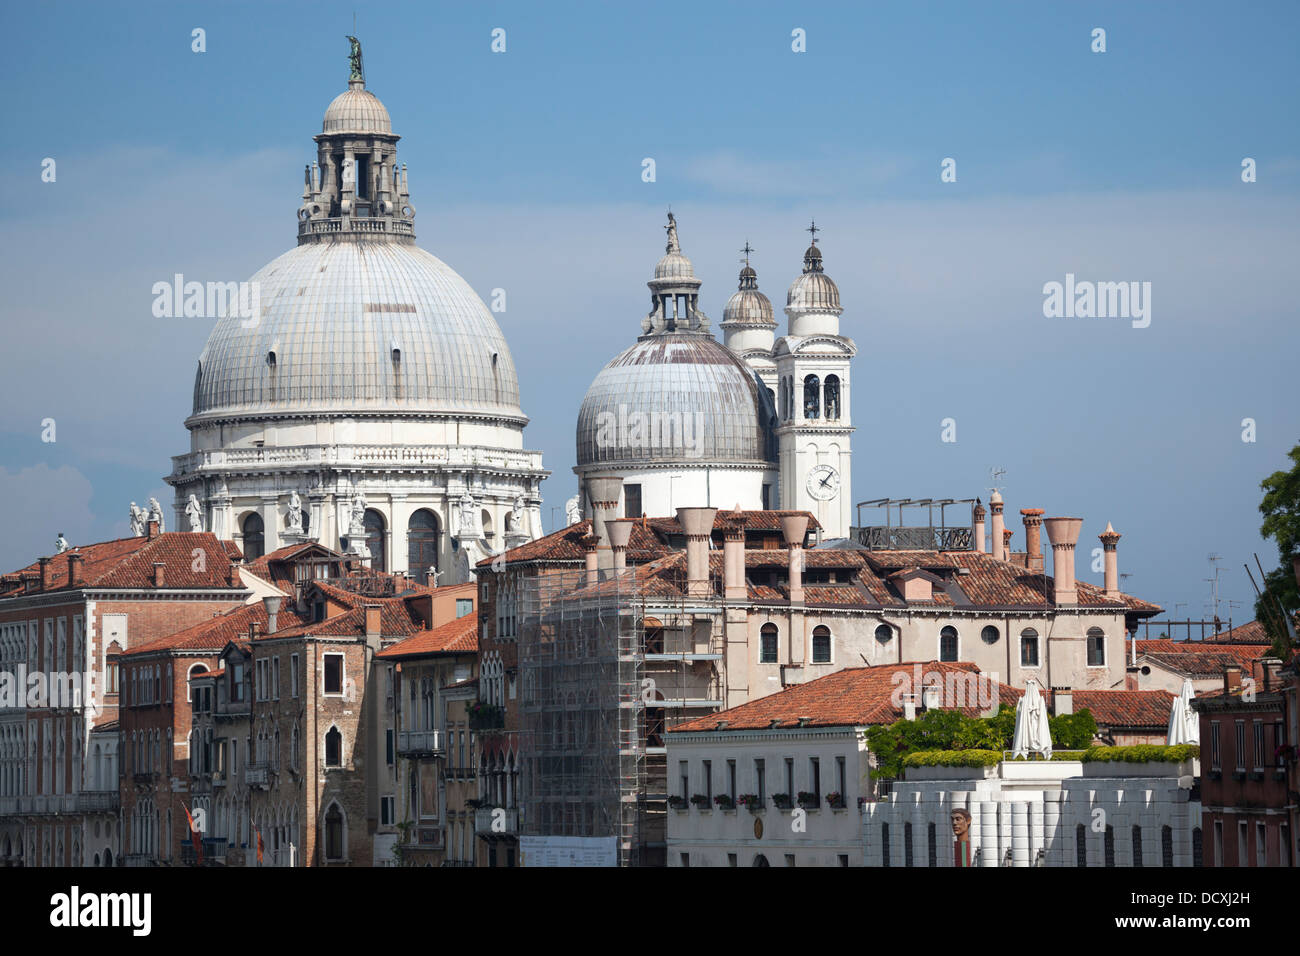 Santa Maria della Salute Basilica seen from the vantage point of the Accademia bridge (Venice - Italy). Basilique la 'Salute'. Stock Photo